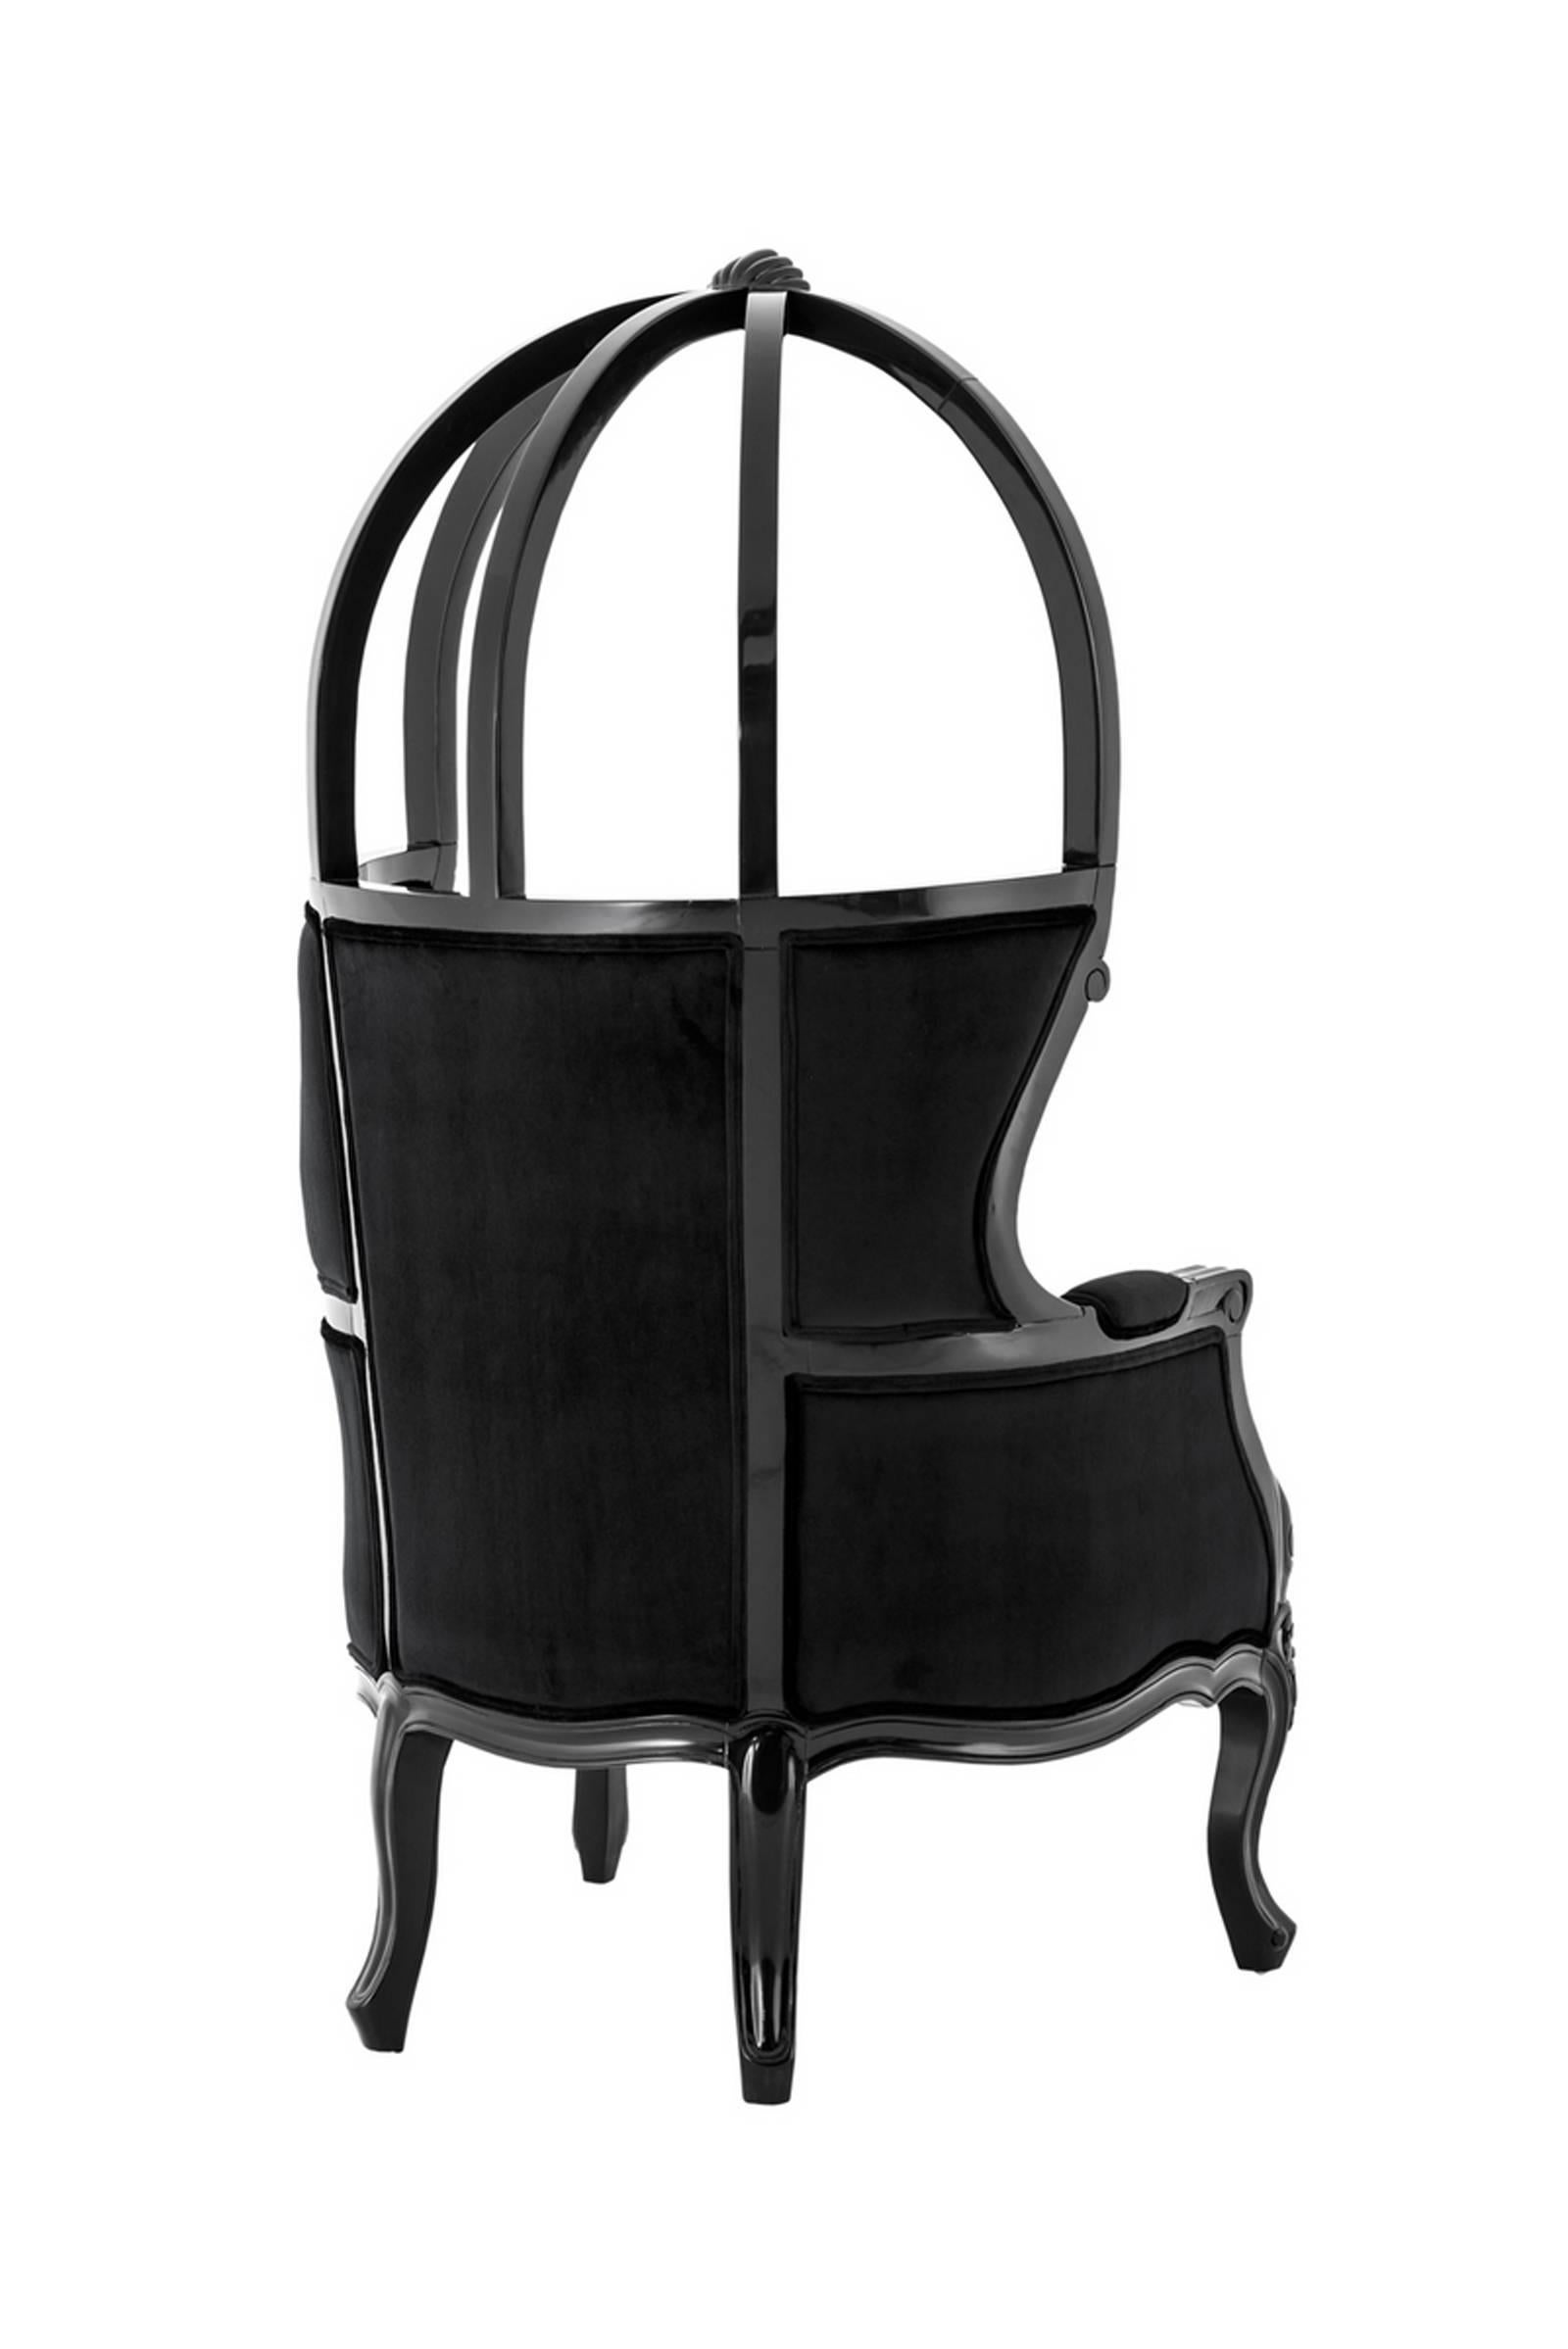 Sessel Buckingham mit Struktur in
Massivholz, schwarz lackiert
und mit schwarzem Samt überzogen.
     